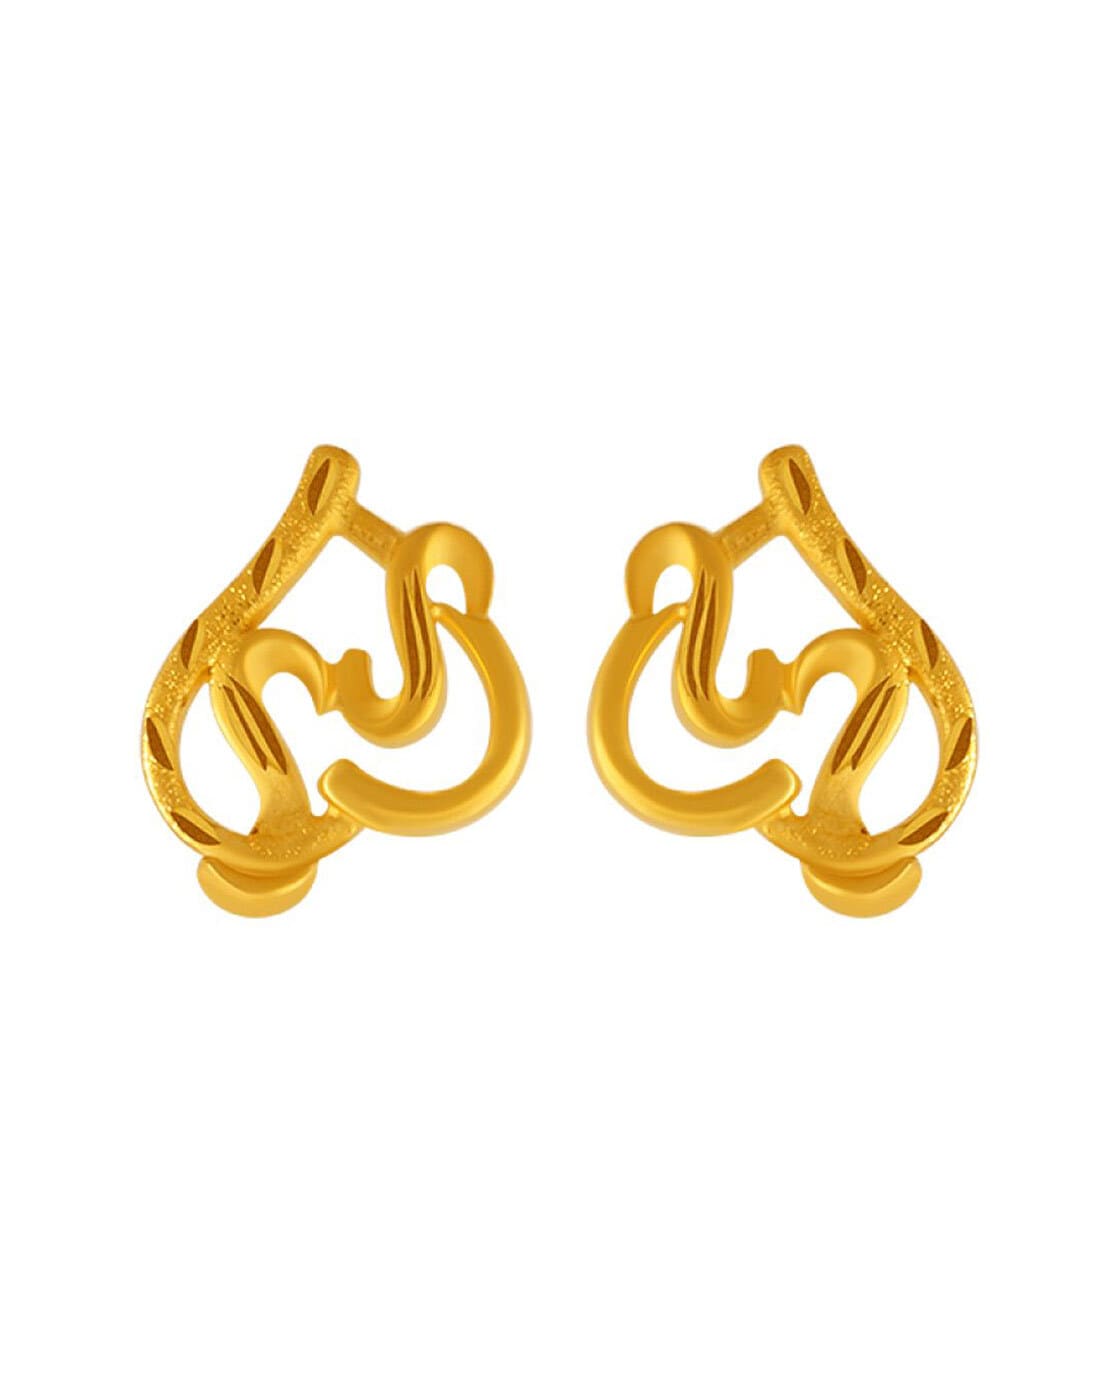 Bali Earrings | Buy Gold And Diamond Bali Earrings Online